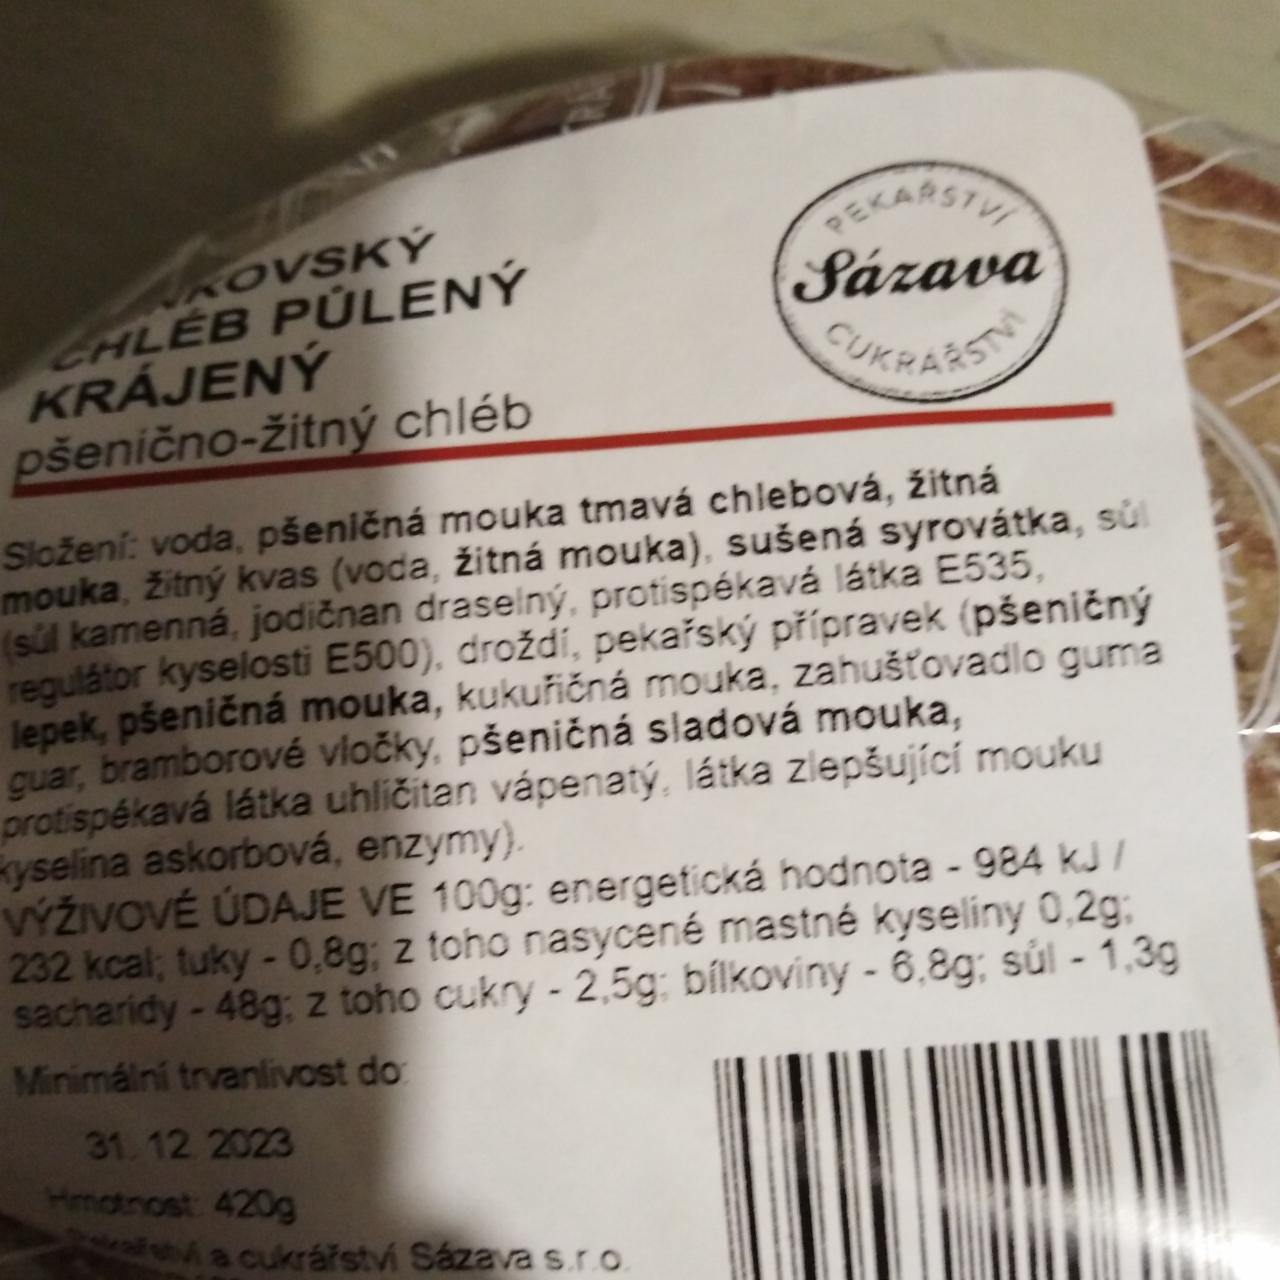 Fotografie - Venkovský chléb půlený krájený pšenično-žitný chléb Sázava